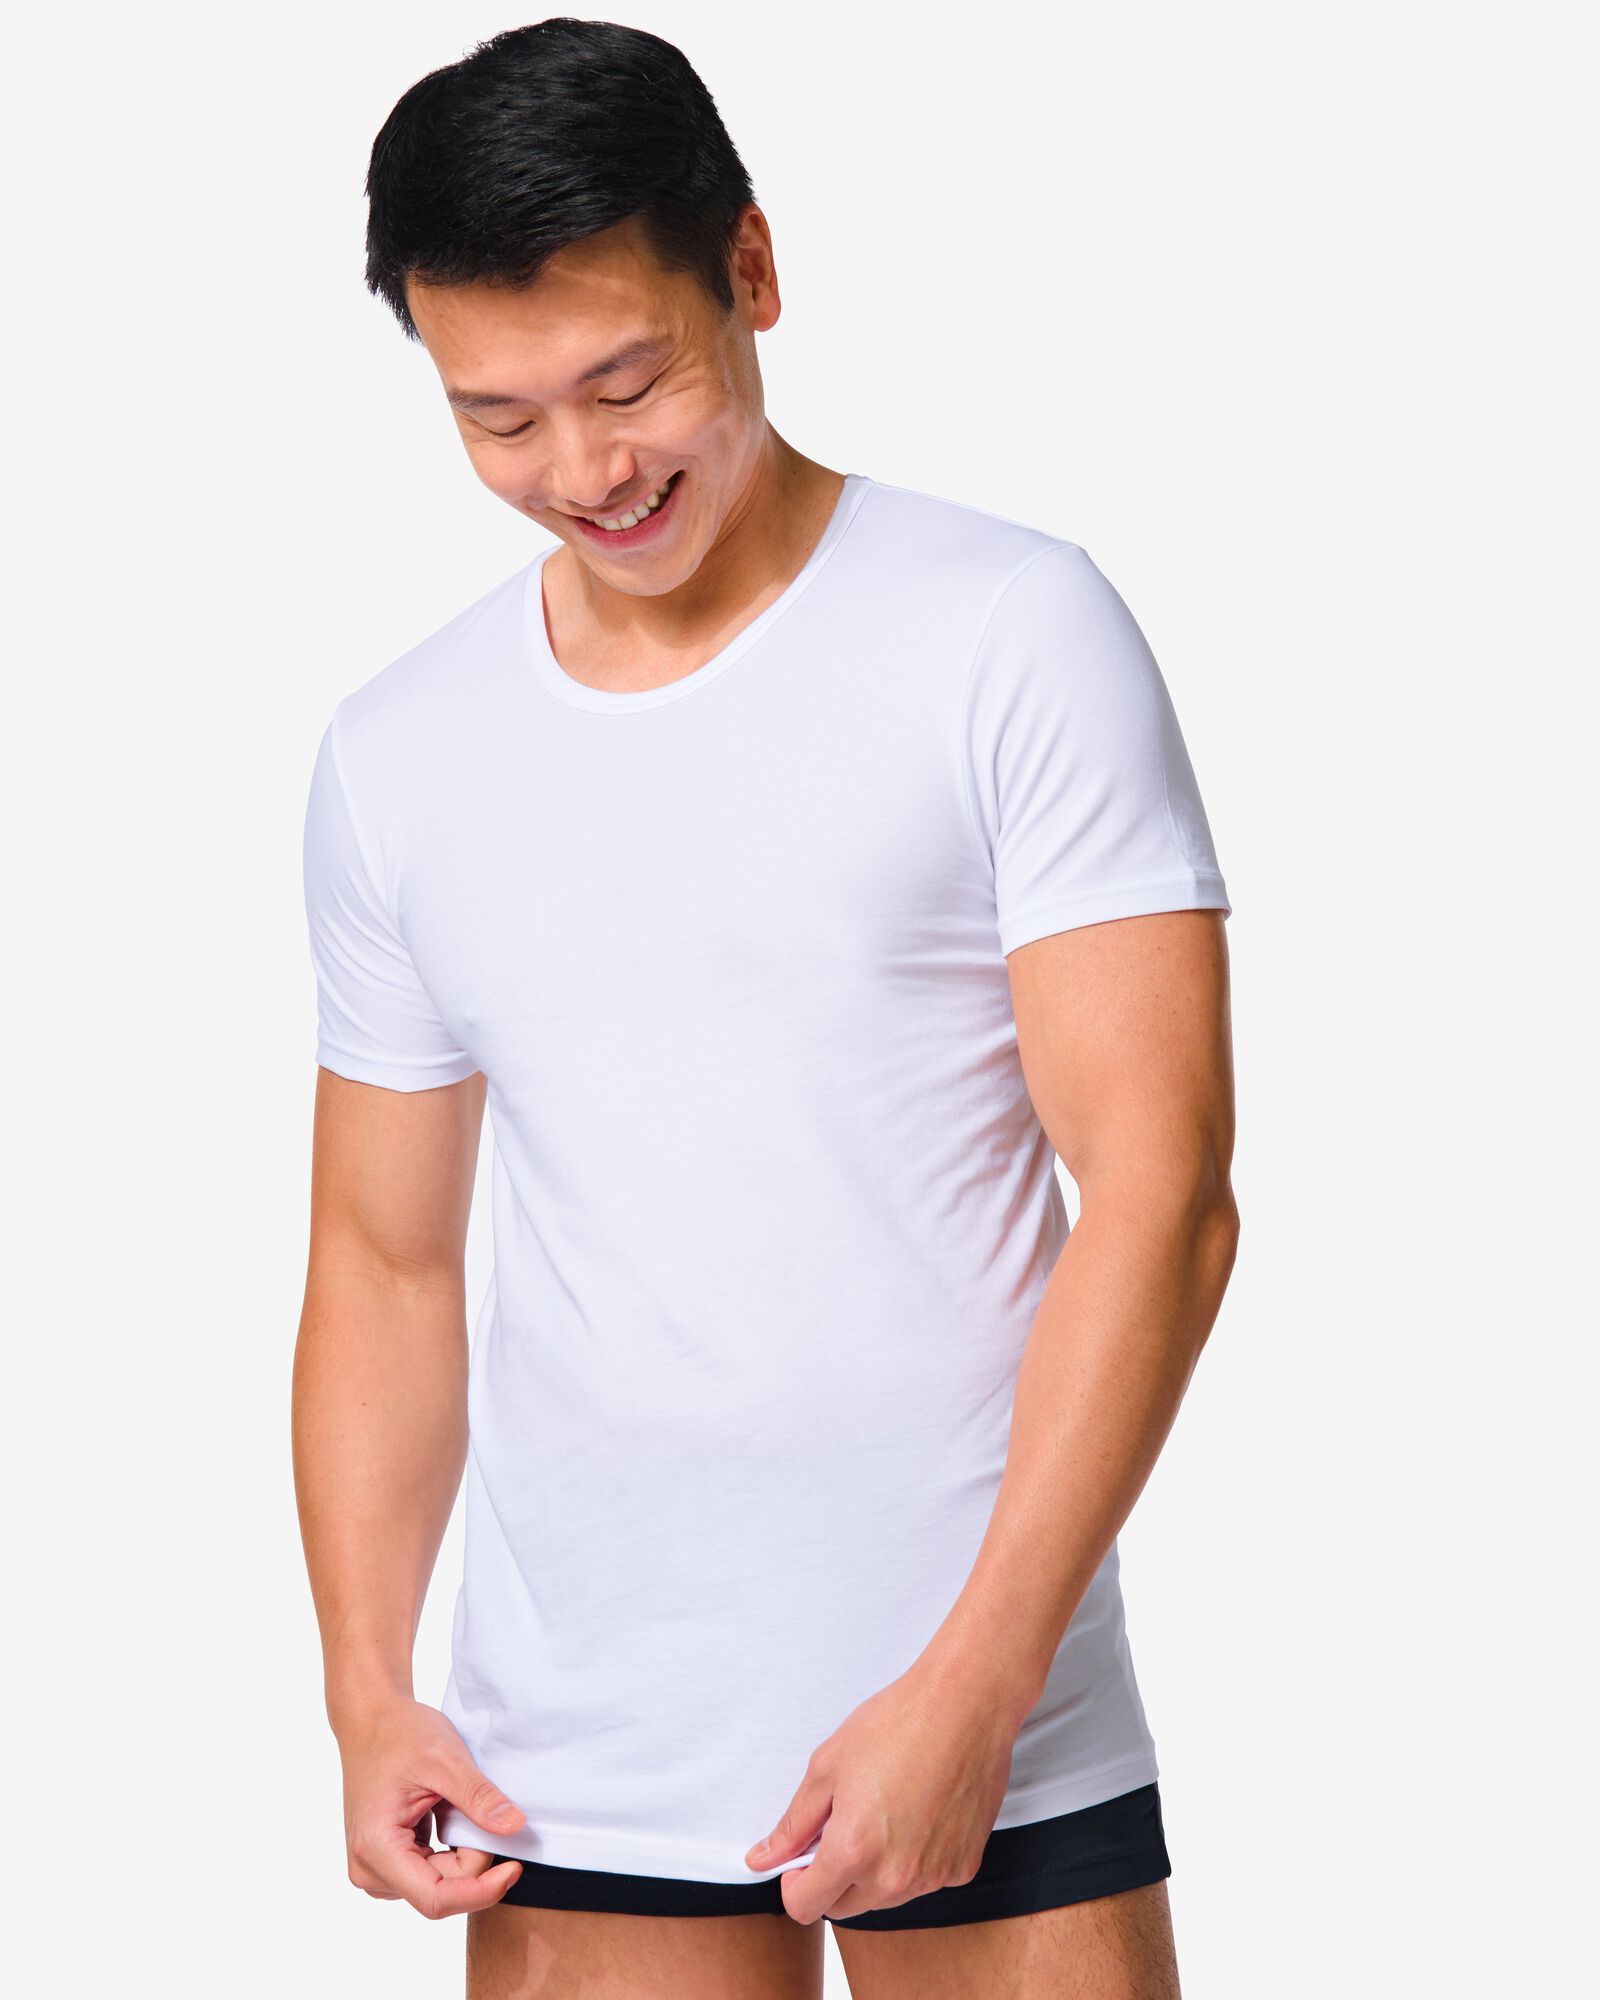 Tshirt blanc coton ajusté Homme slim